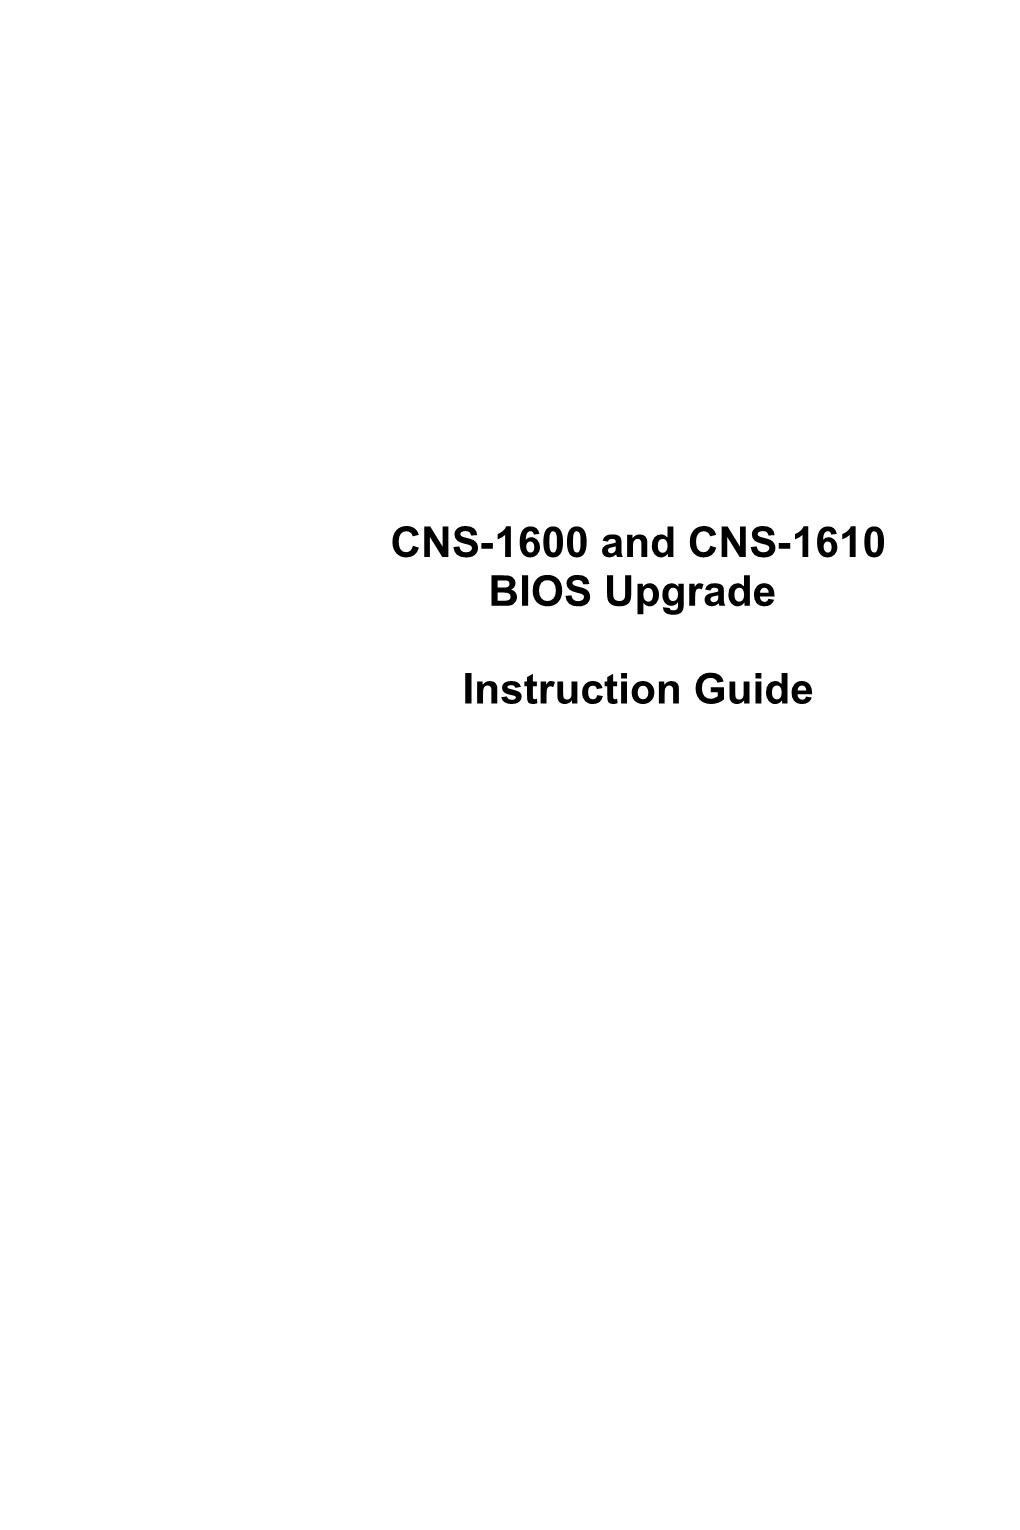 CNS-1600 BIOS Upgrade Instructions